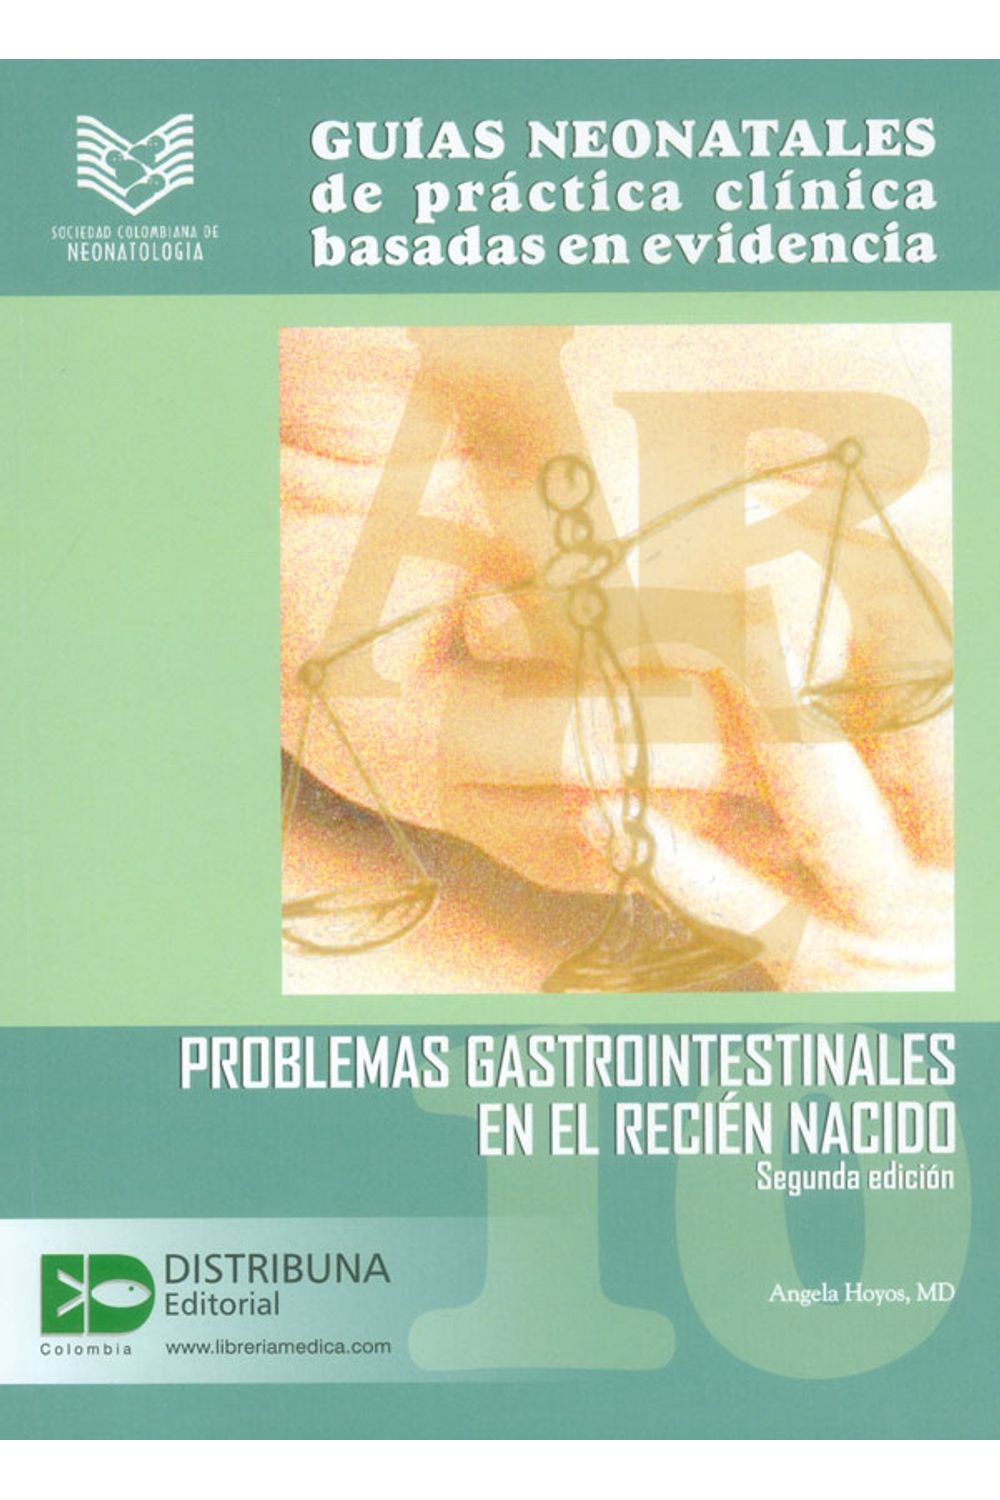 guias-neonatales-de-practicas-clinicas-9789588813745-buna